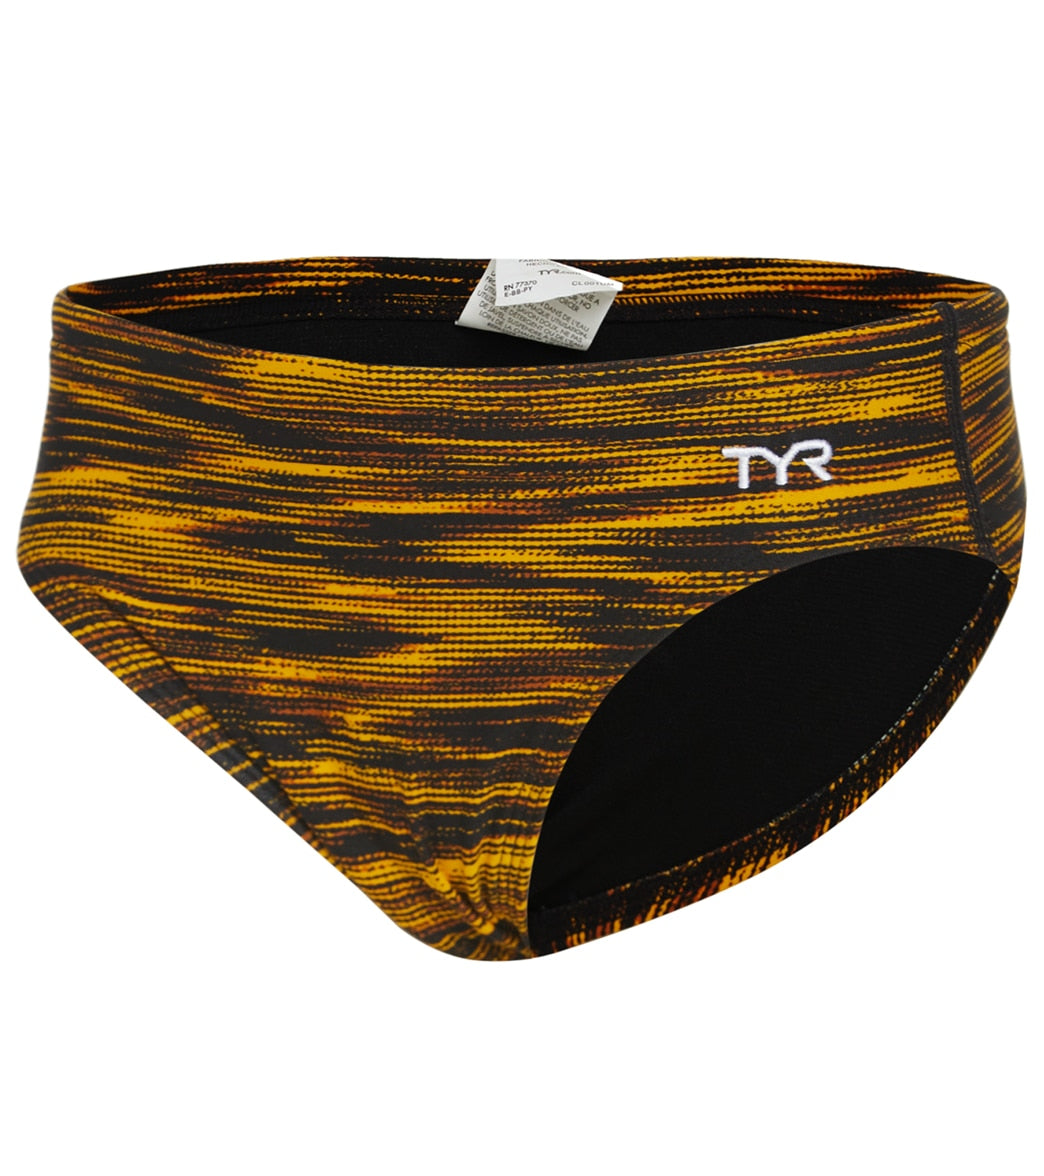 TYR Boys Fizzy Racer Brief Swimsuit